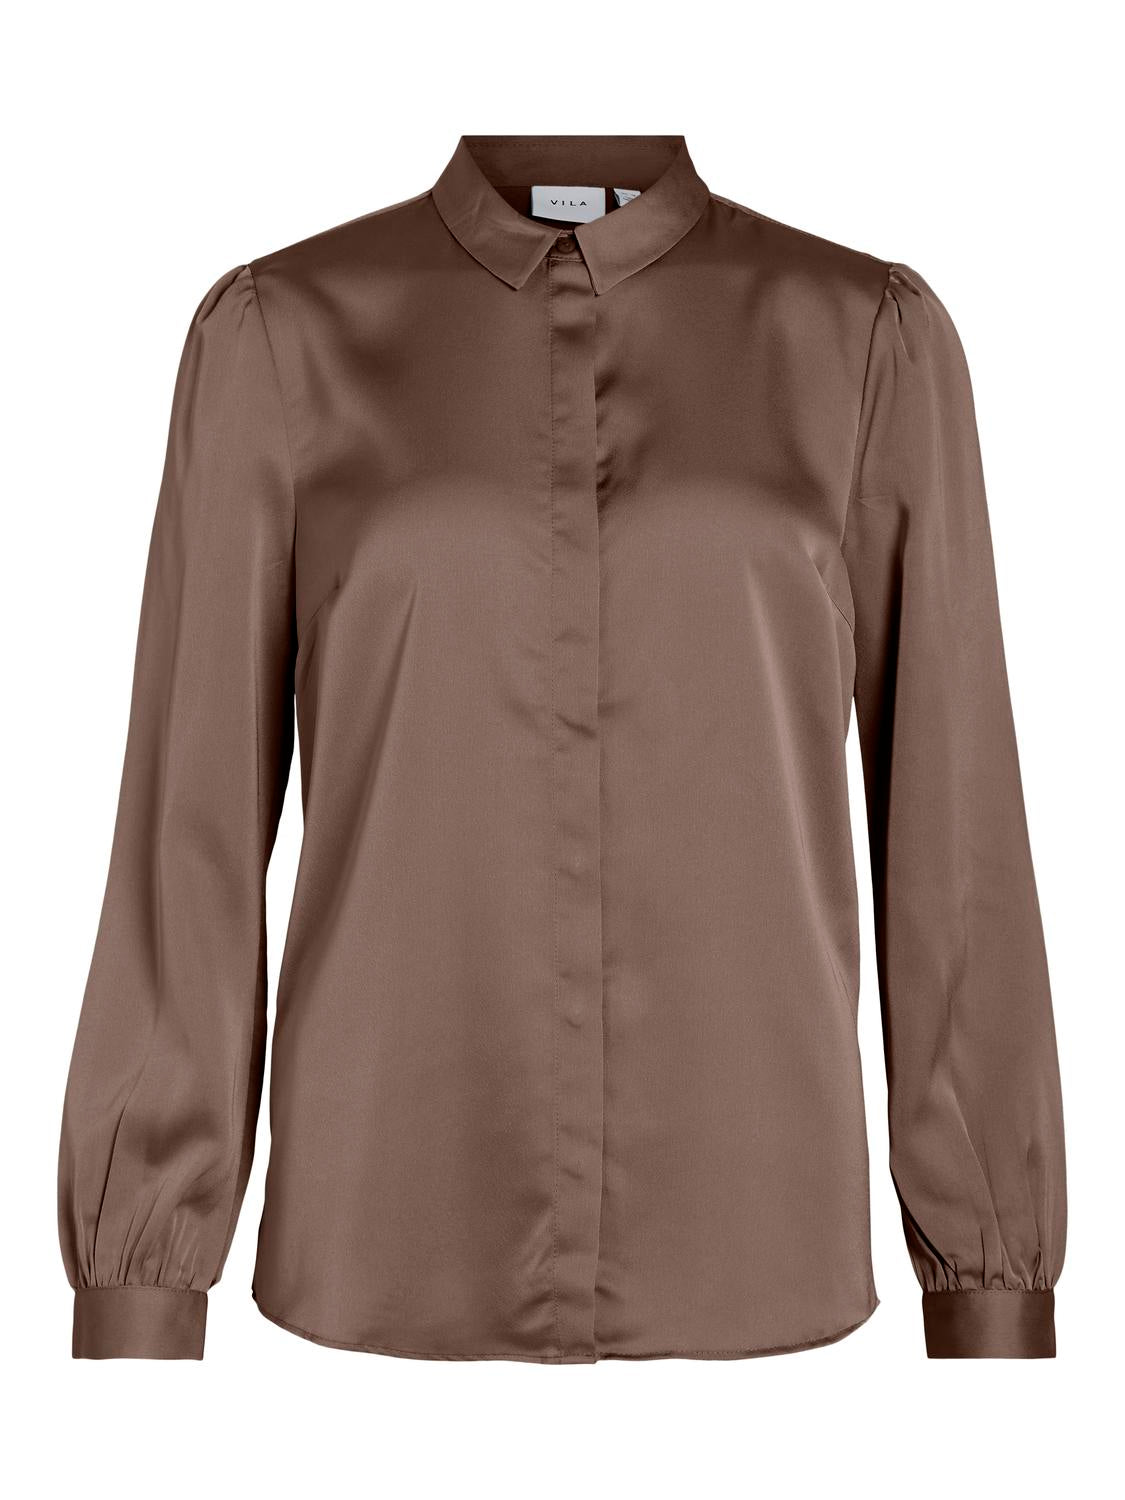 VIELLETTE T-Shirts & Tops - Brown Lentil